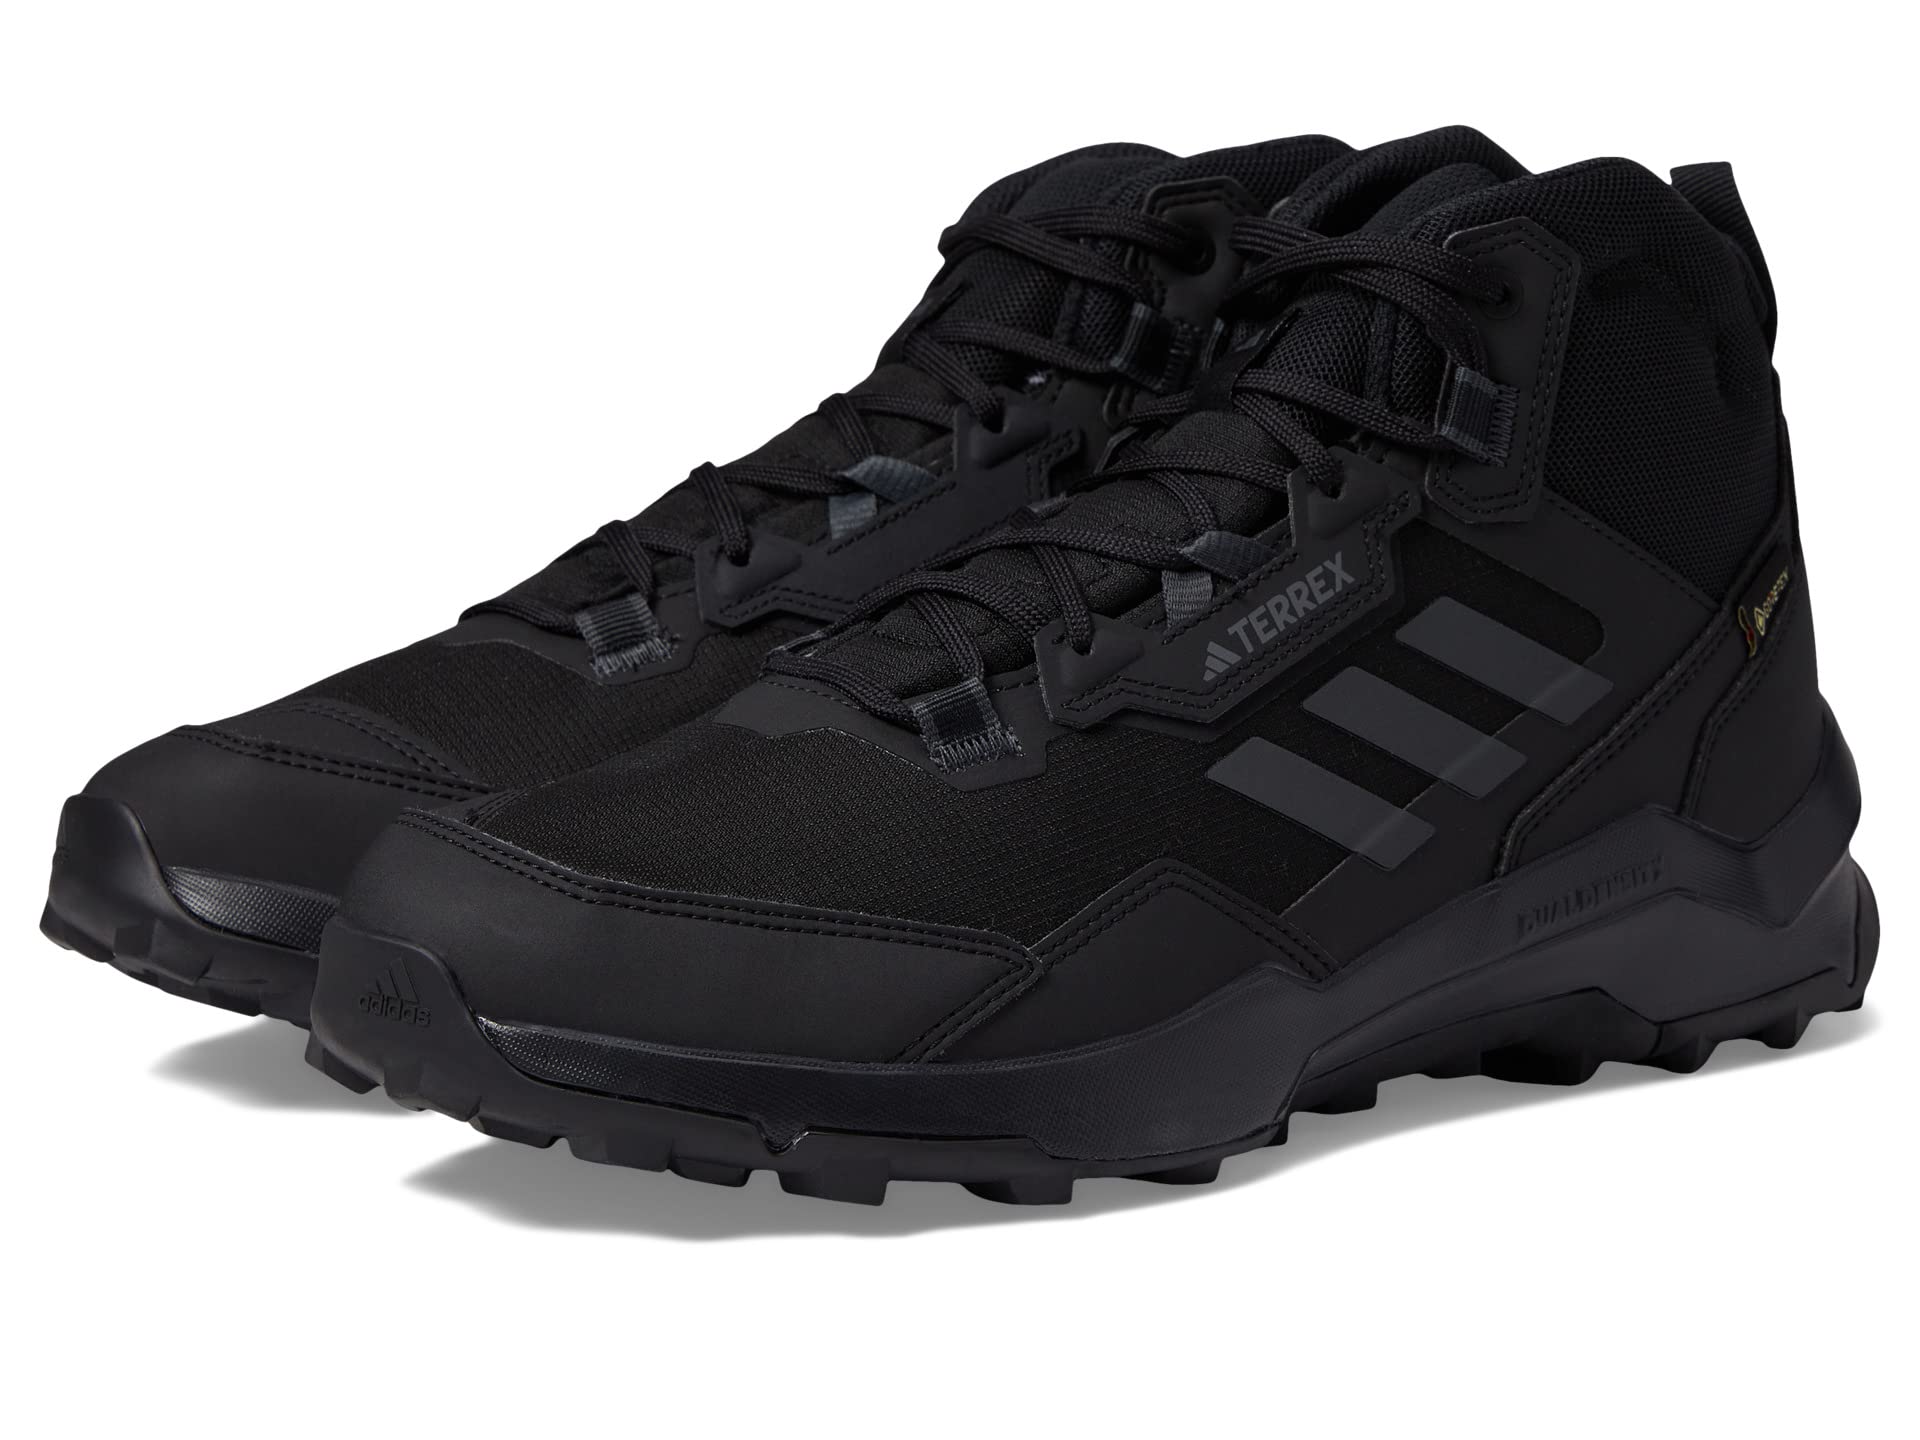 Беговые ботинки Terrex Ax4 Mid GORE-TEX® от Adidas для мужчин Adidas